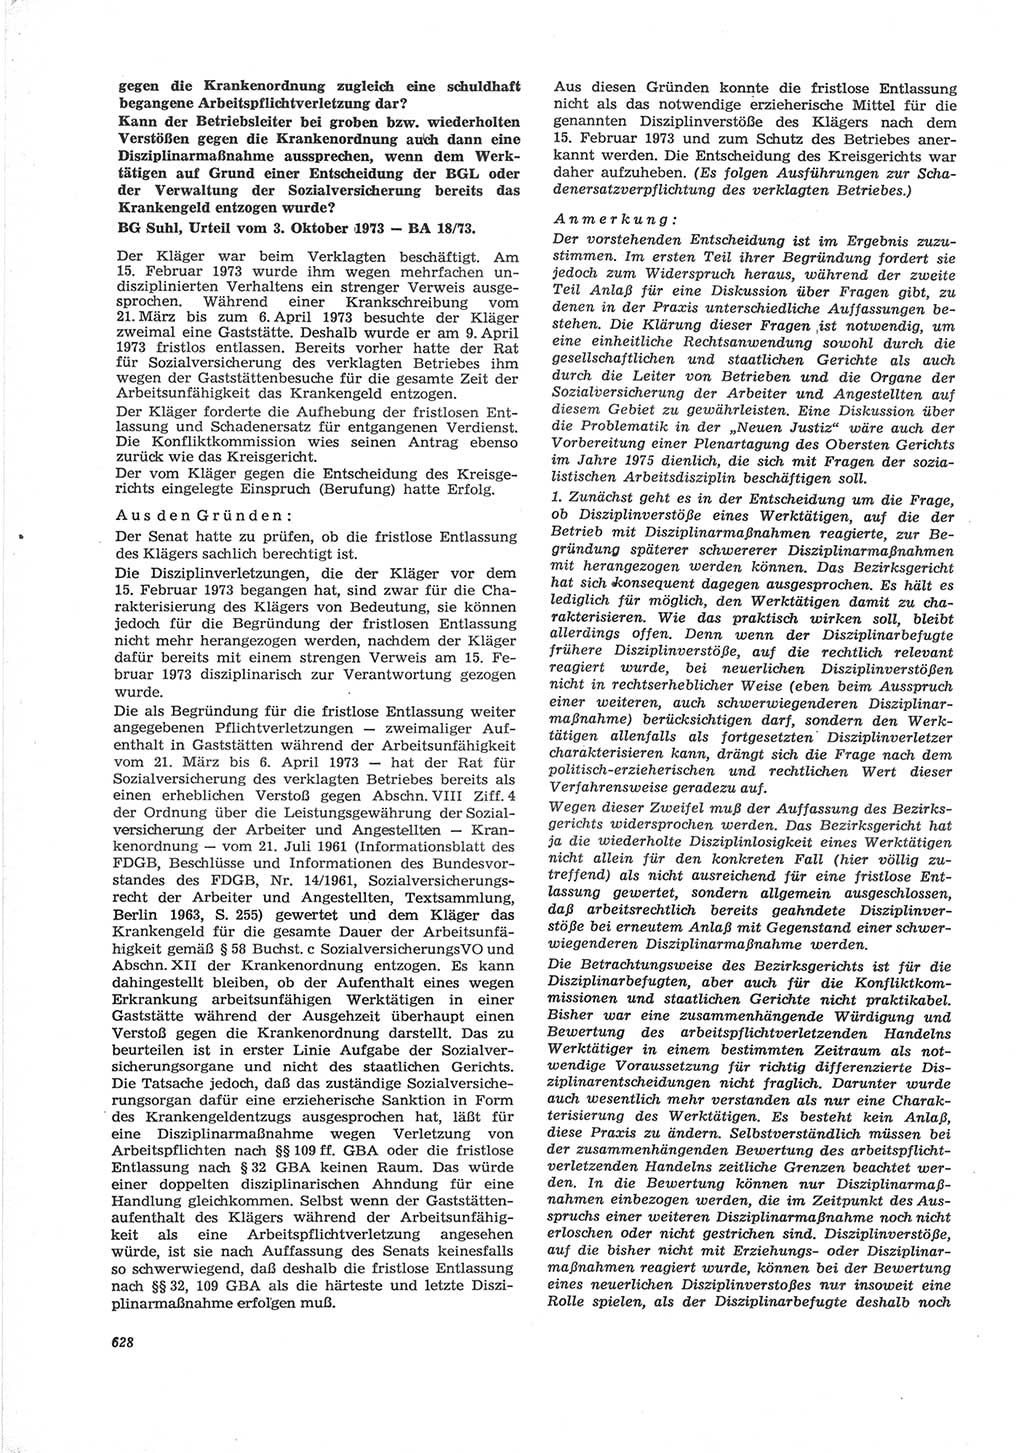 Neue Justiz (NJ), Zeitschrift für Recht und Rechtswissenschaft [Deutsche Demokratische Republik (DDR)], 28. Jahrgang 1974, Seite 628 (NJ DDR 1974, S. 628)